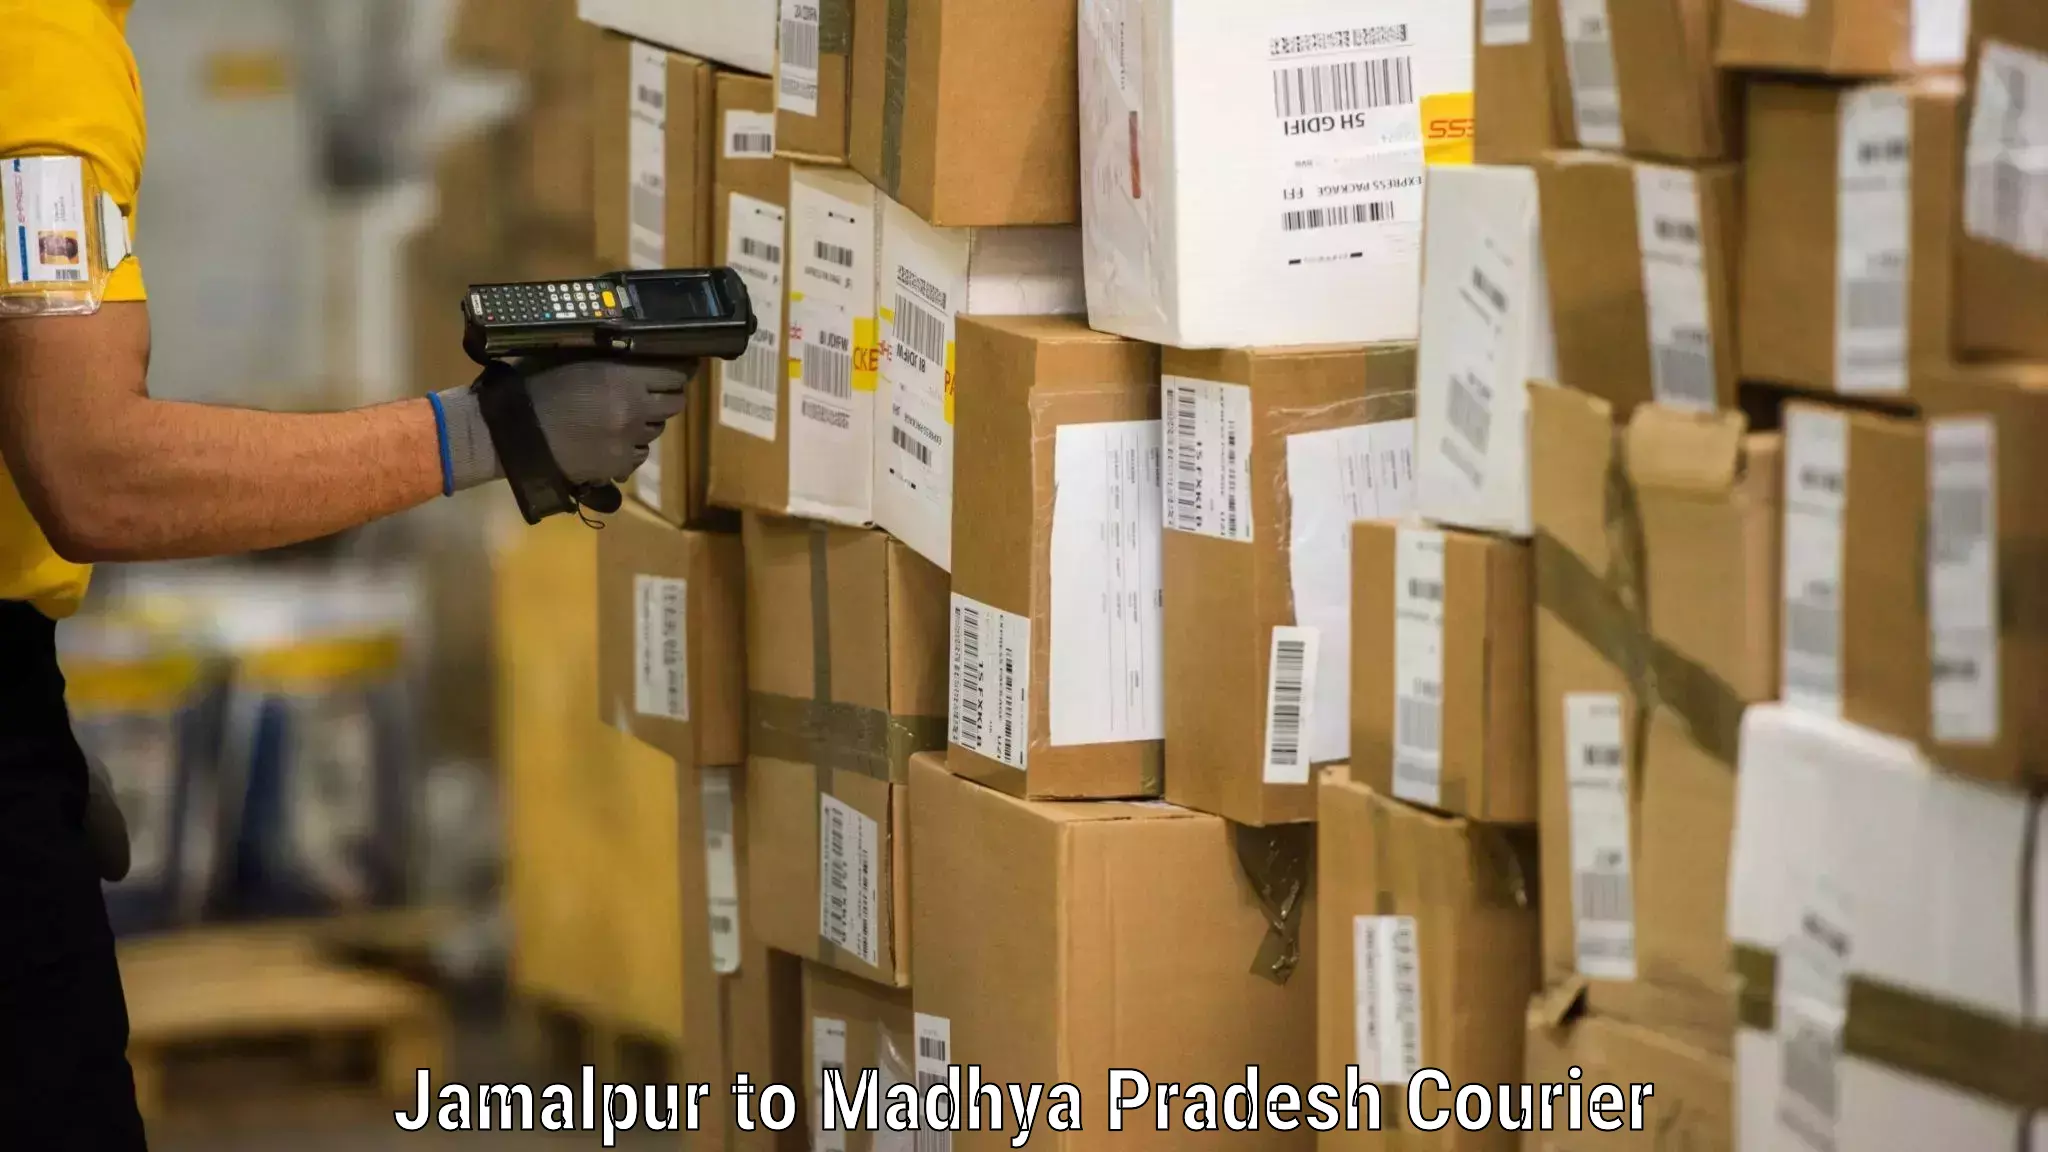 Furniture relocation experts Jamalpur to Madhya Pradesh